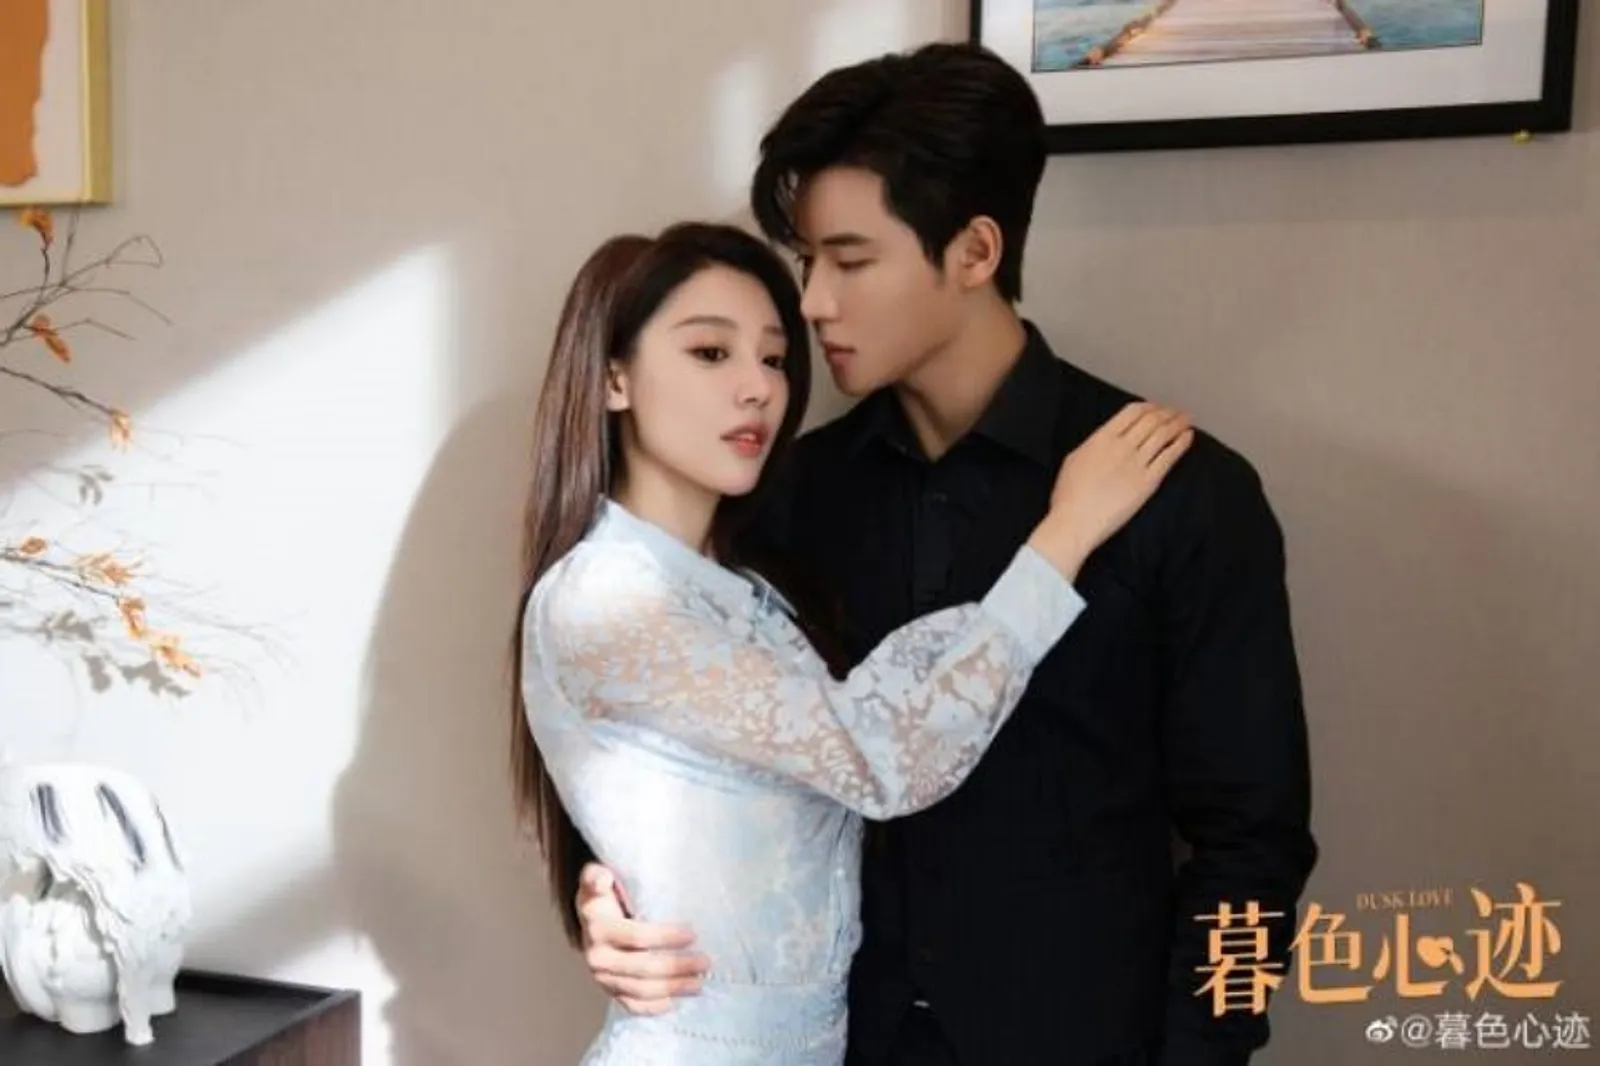 Fakta dan Sinopsis Drama Tiongkok 'Dusk Love', tentang Kisah CLBK!